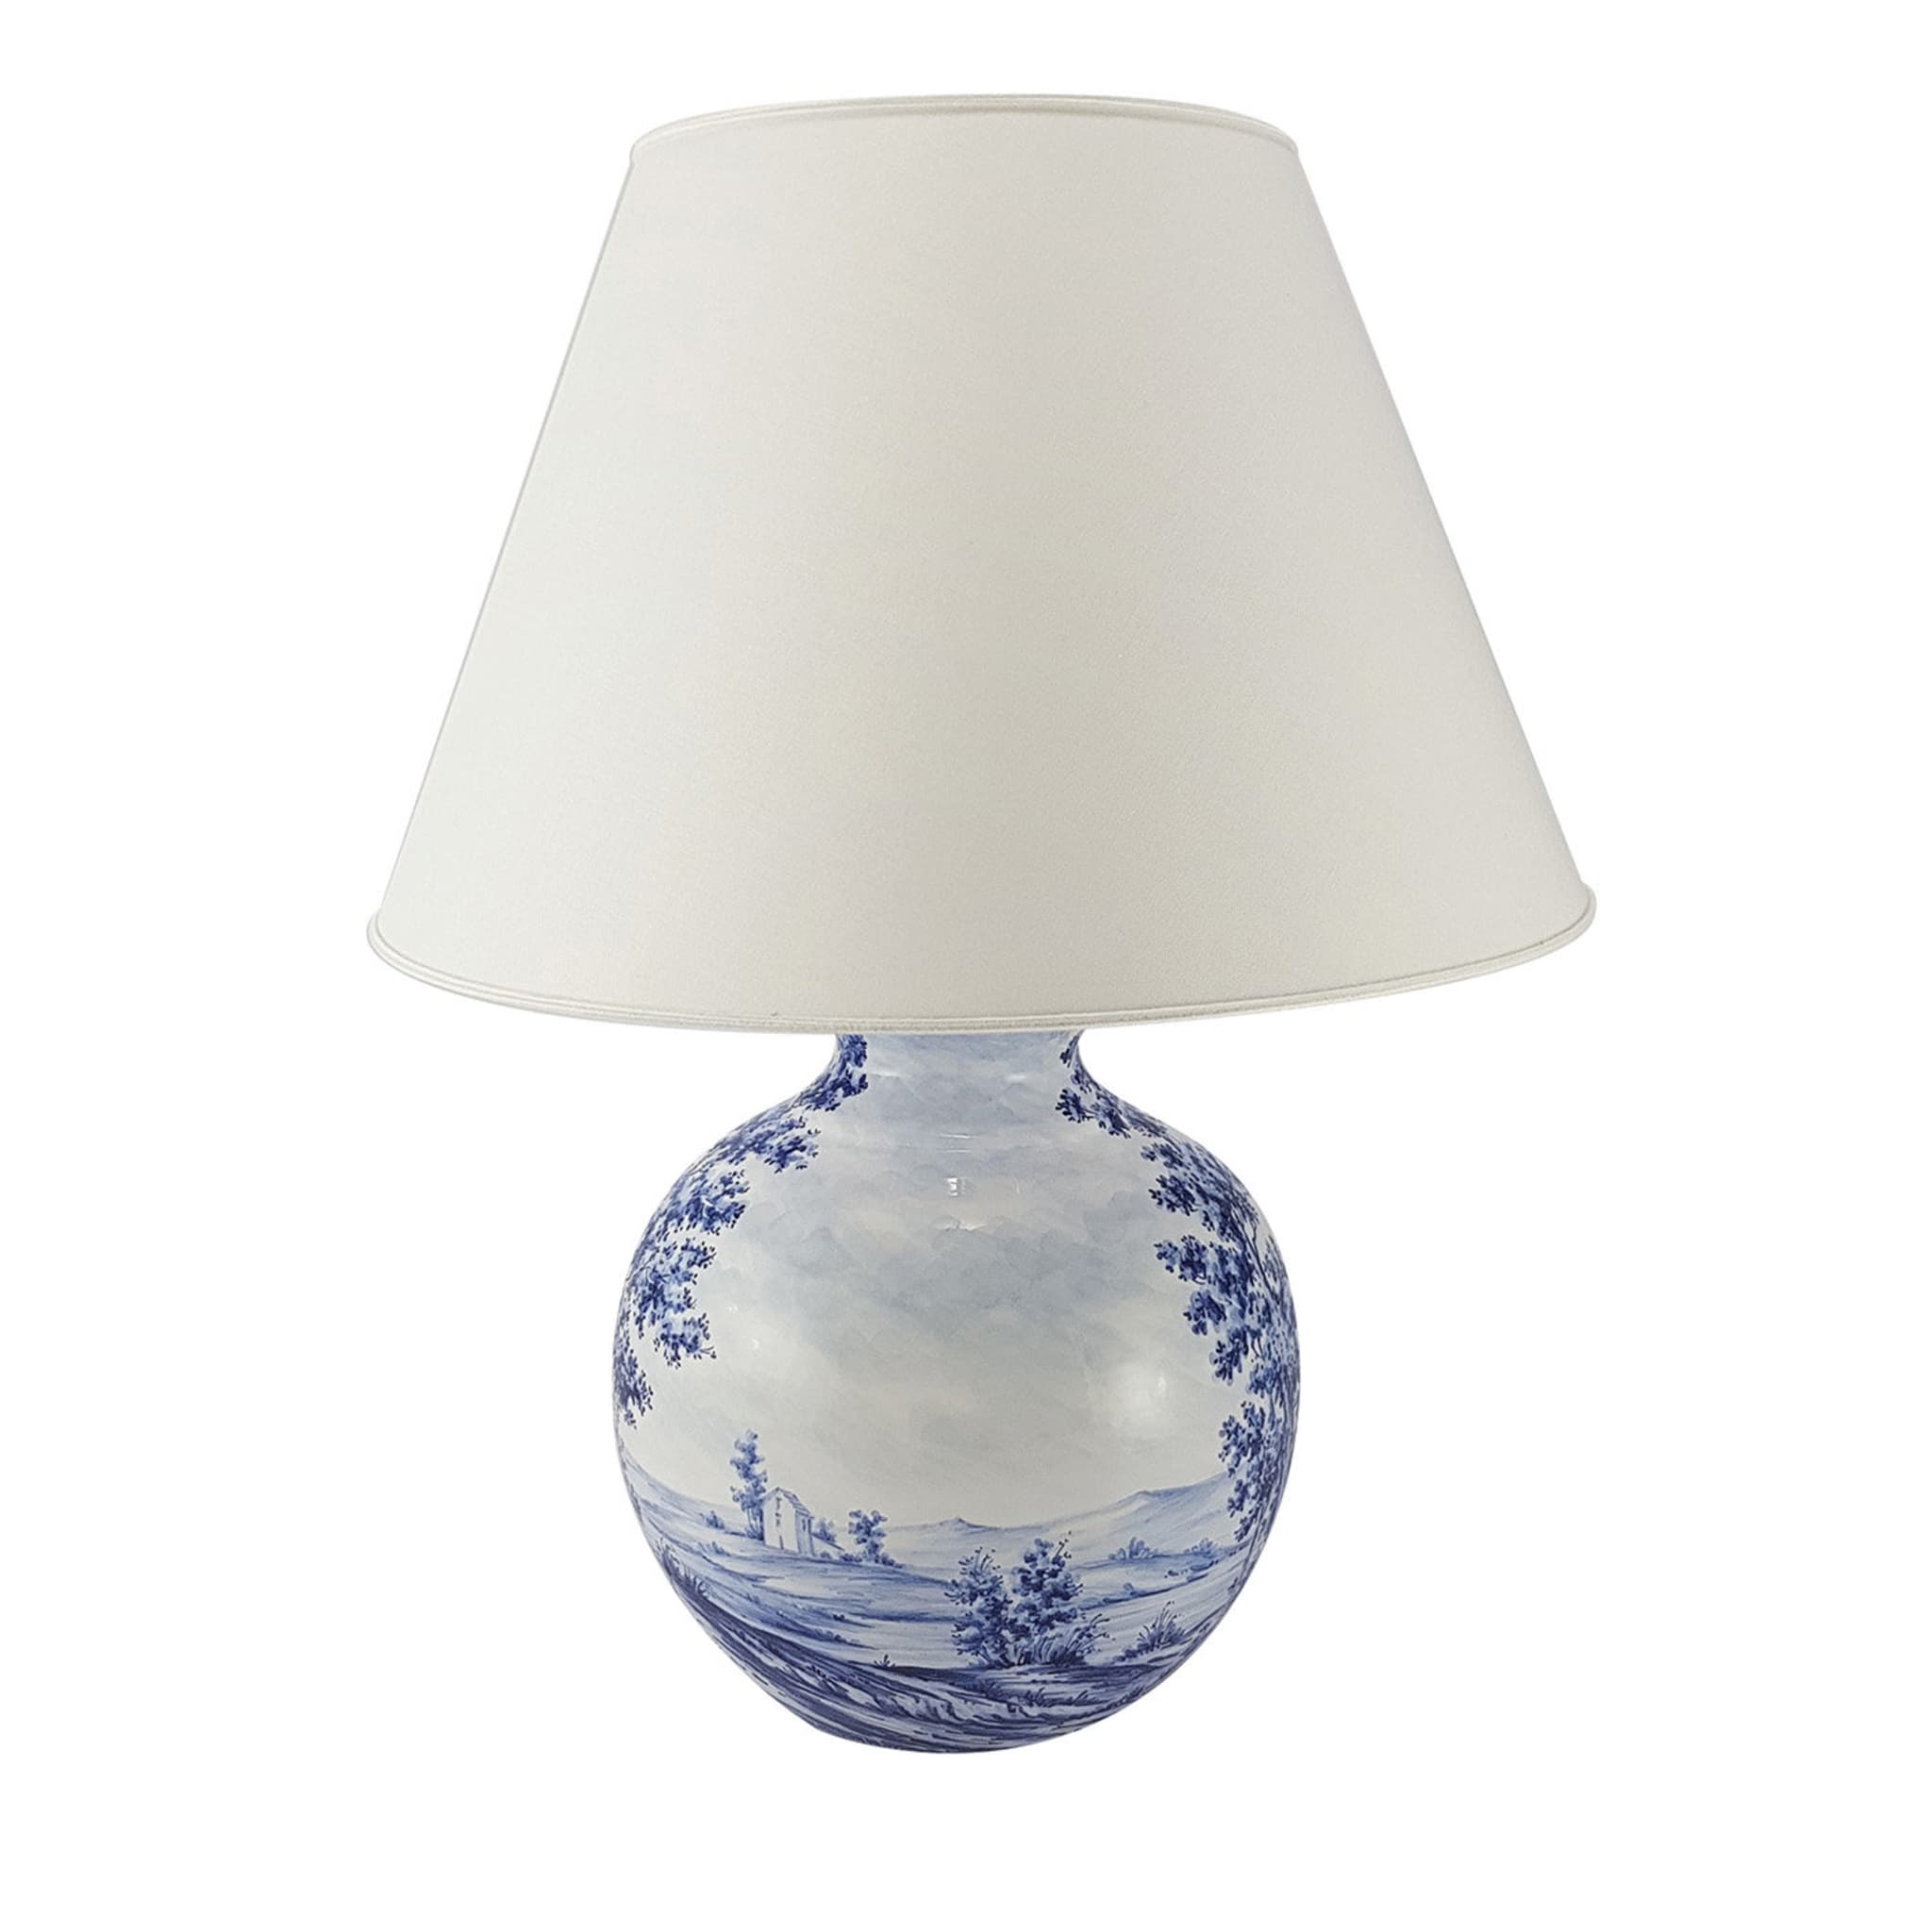 Lampe de table paysage bleu - Vue principale